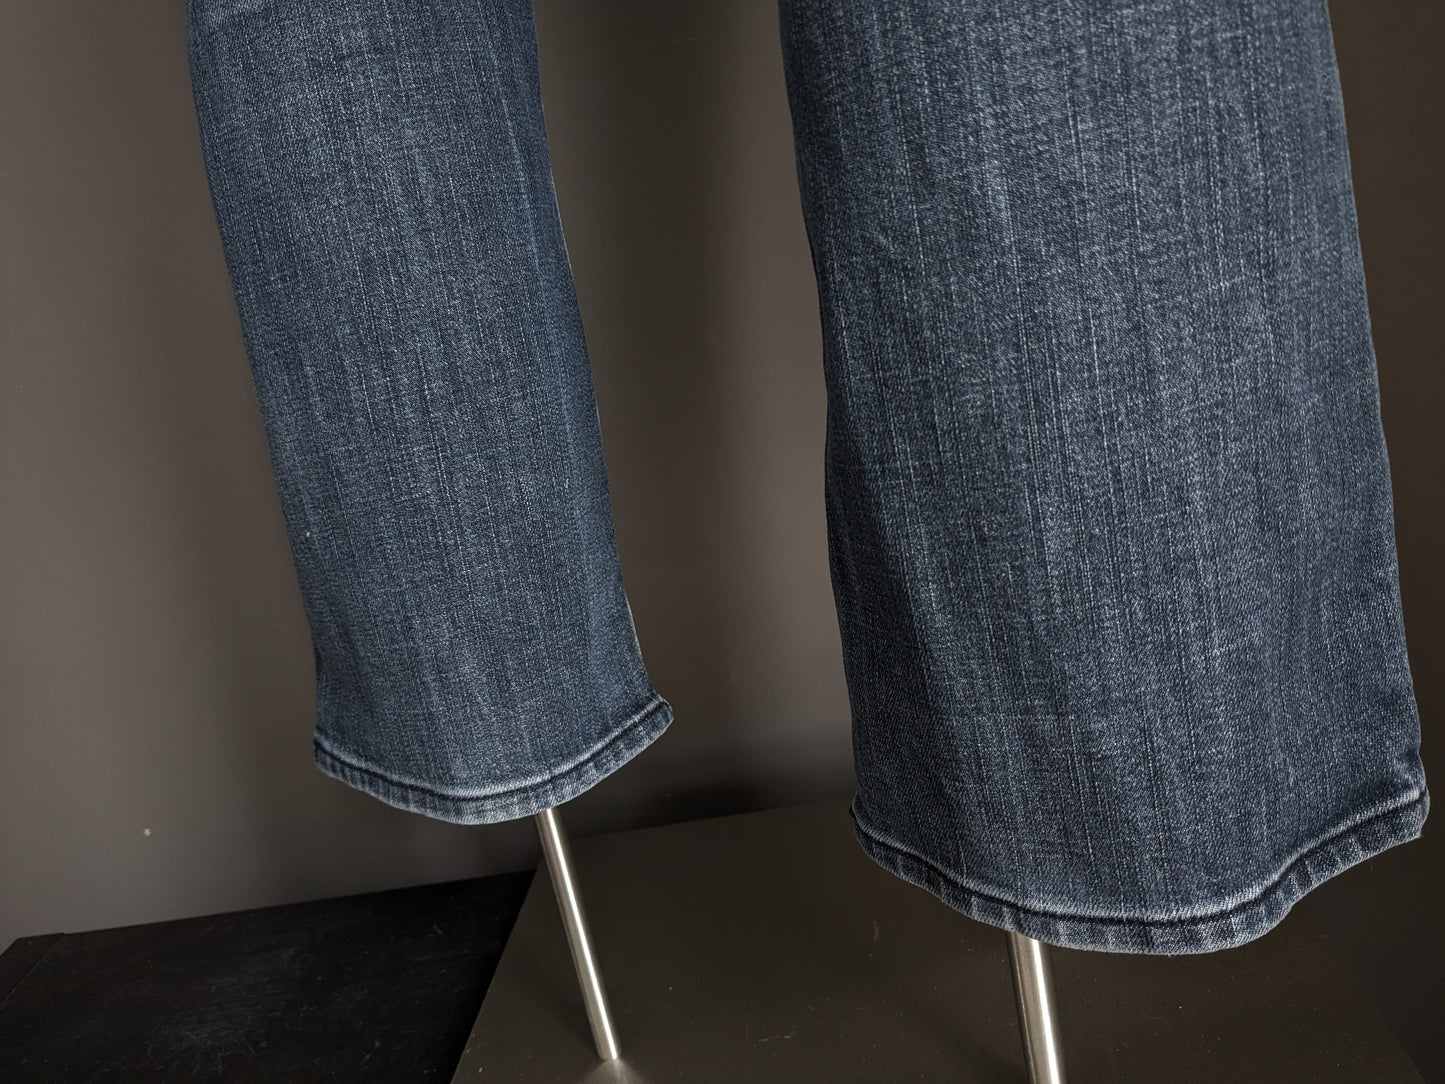 Pierre Cardin Jeans. Schwarz grau gefärbt. Größe W33 - L30. Geben Sie Mod Deauville ein.